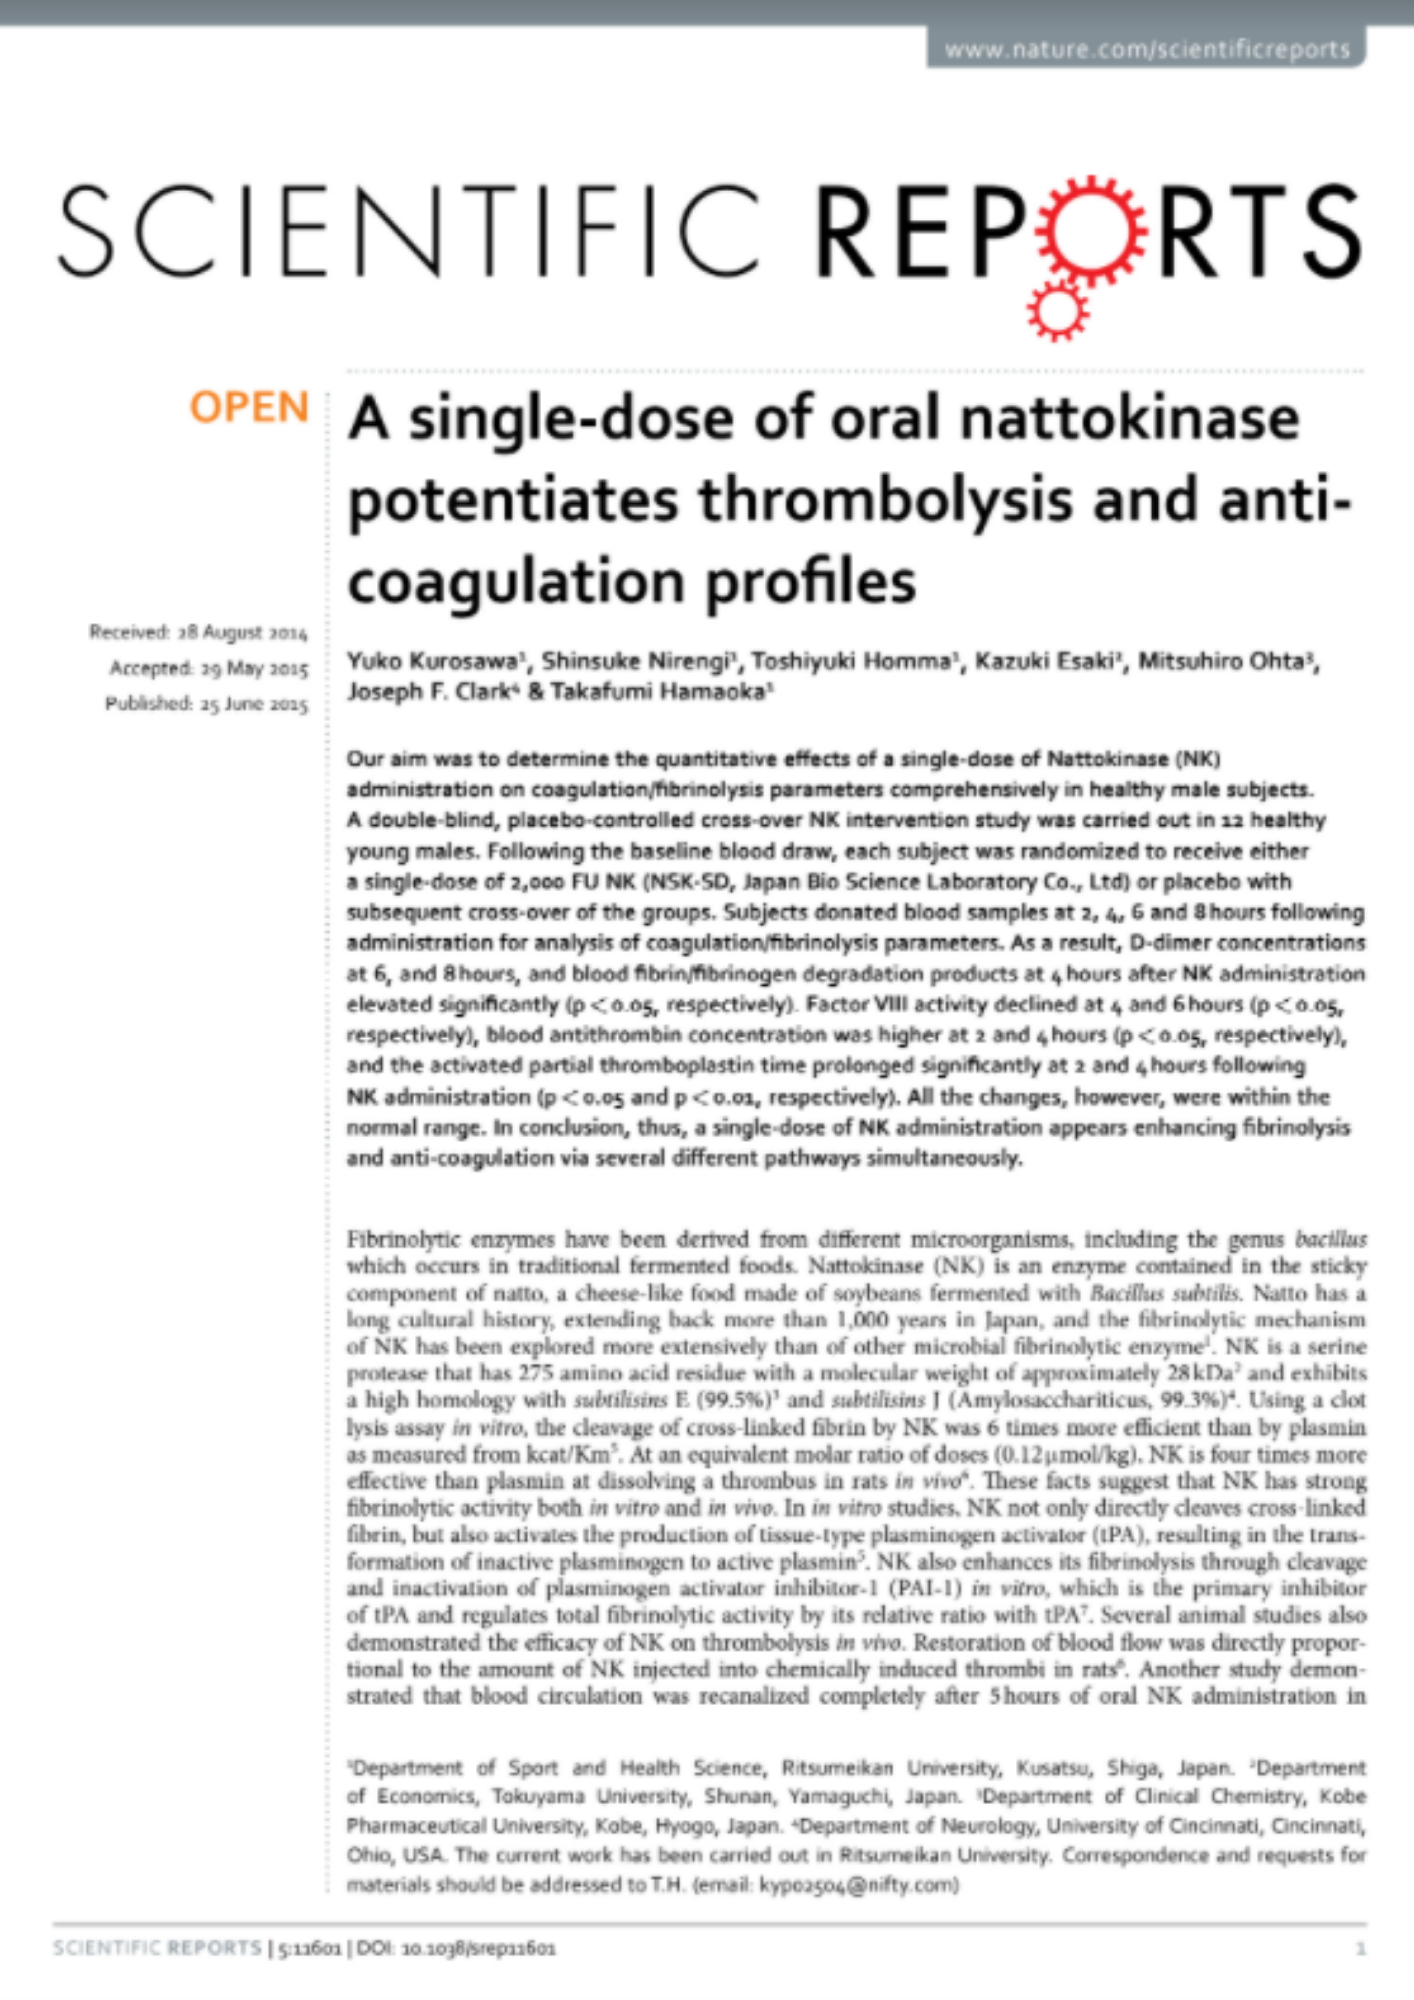 A single-dose of oral nattokinase potentiates thrombolysis and anti - coagulation profiles